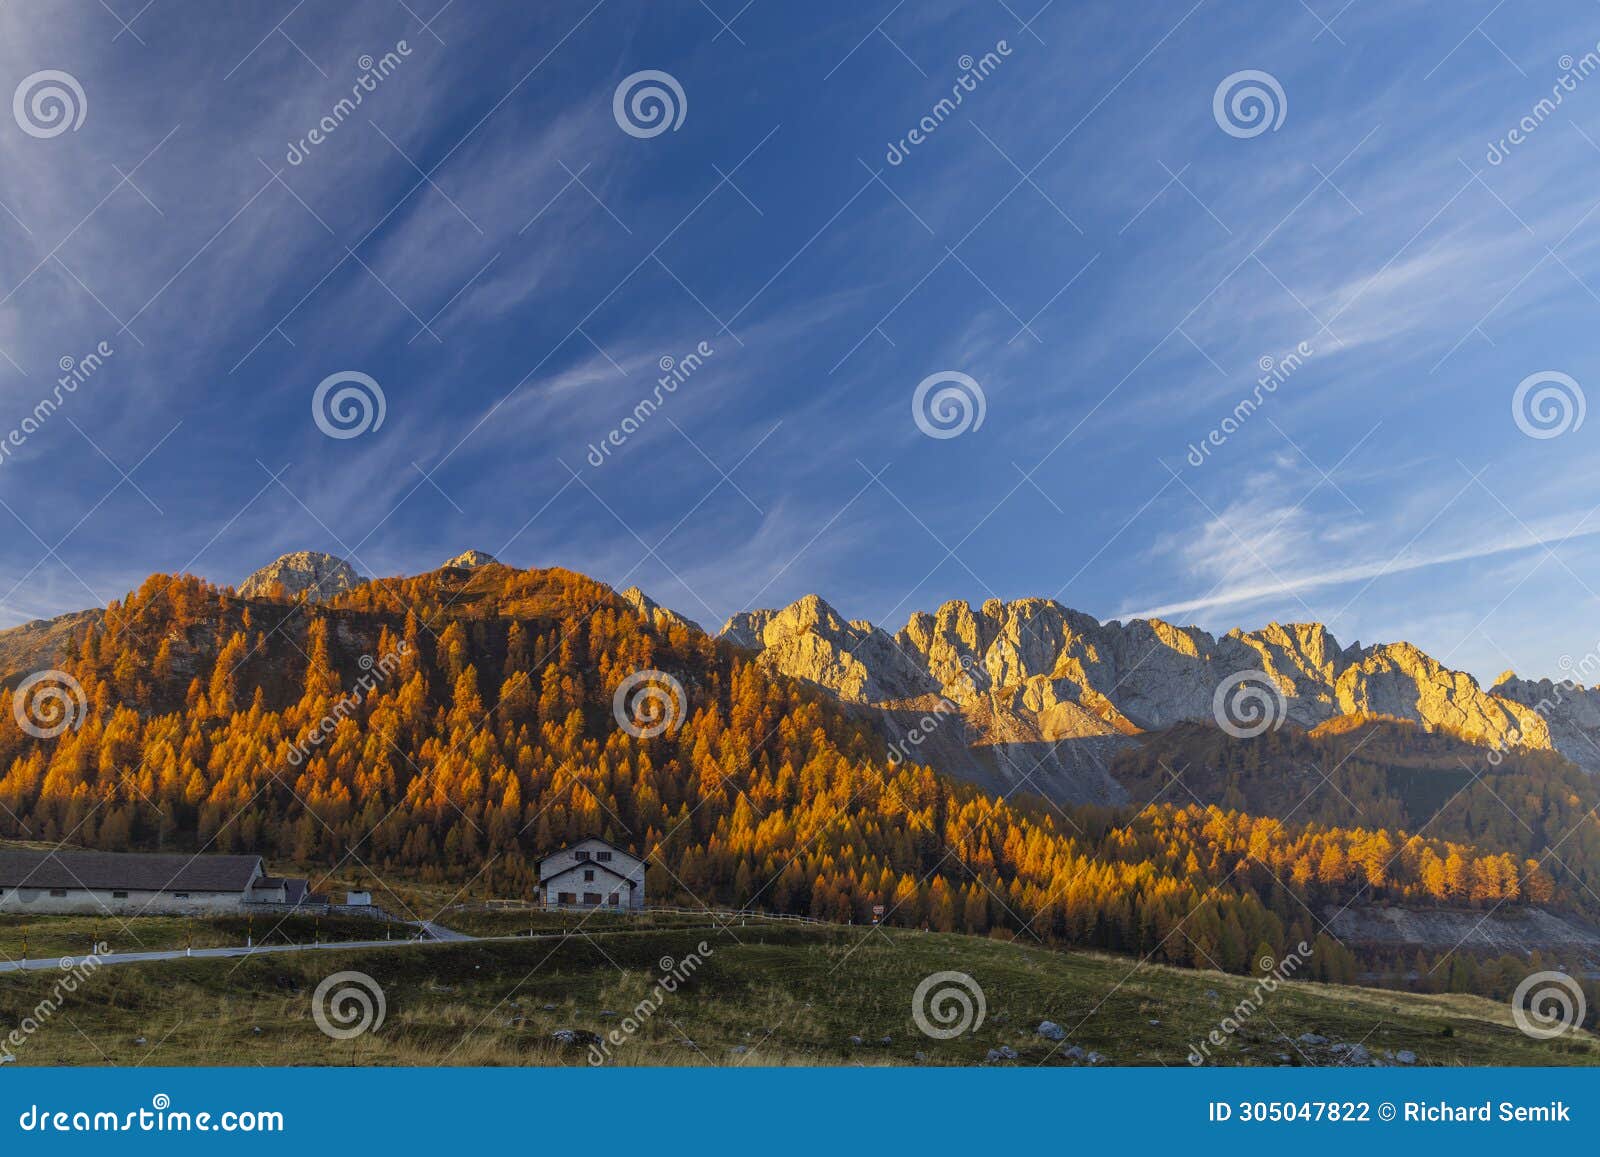 landscape near sella di razzo and sella di rioda pass, carnic alps, friuli-venezia giulia, italy